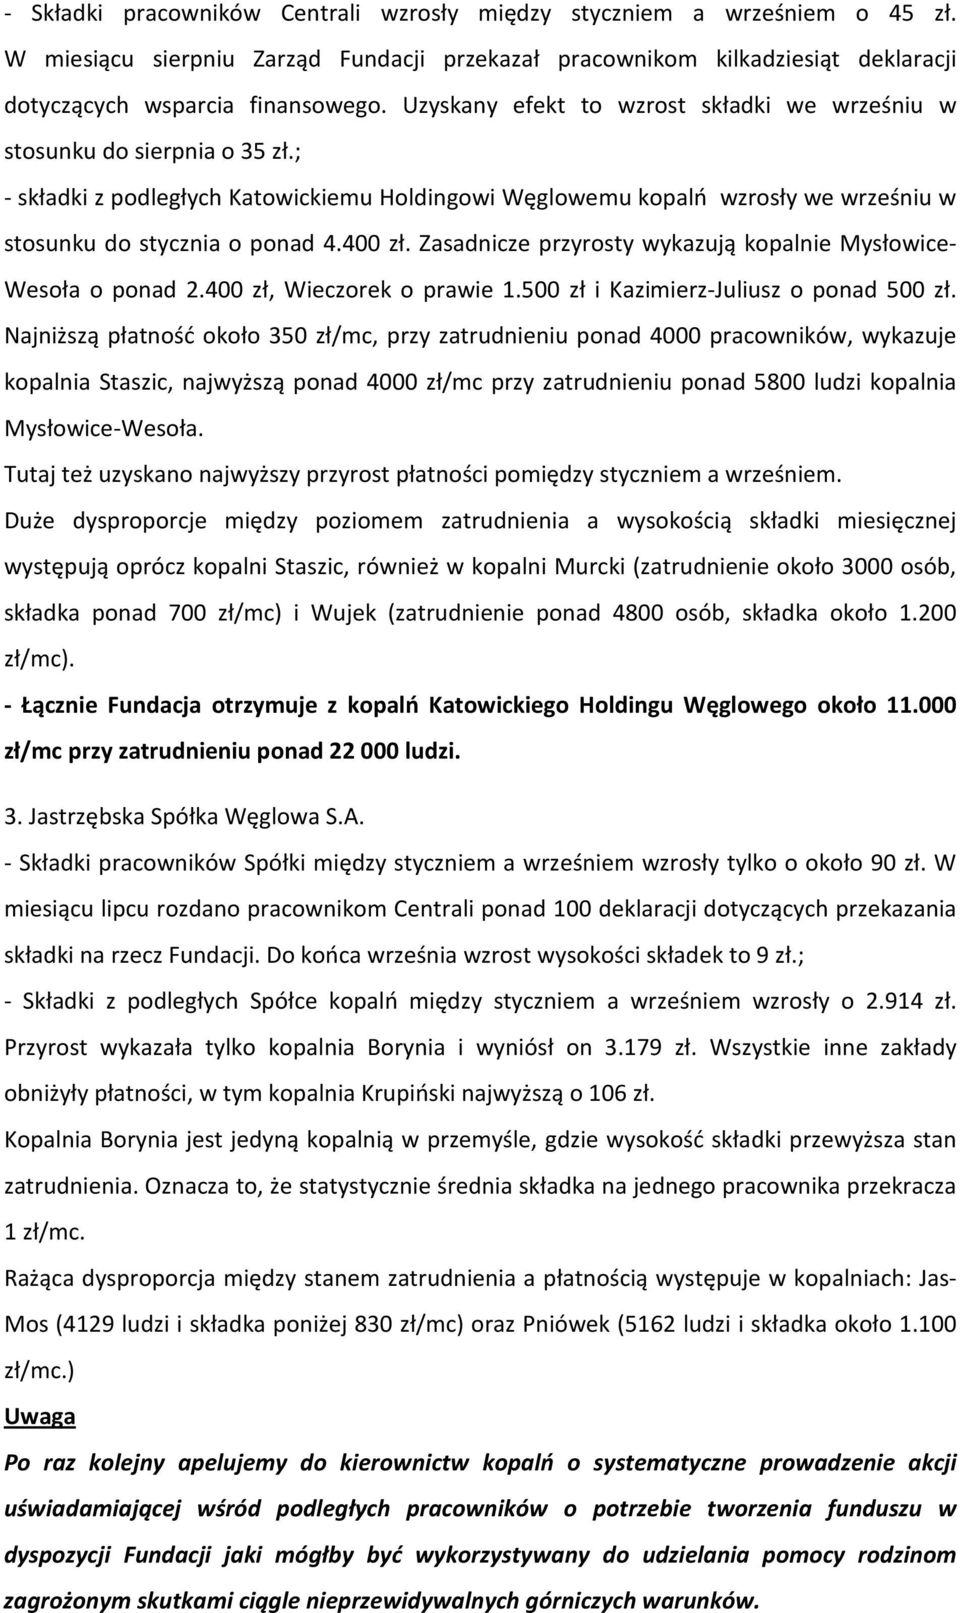 400 zł. Zasadnicze przyrosty wykazują kopalnie Mysłowice- Wesoła o ponad 2.400 zł, Wieczorek o prawie 1.500 zł i Kazimierz-Juliusz o ponad 500 zł.